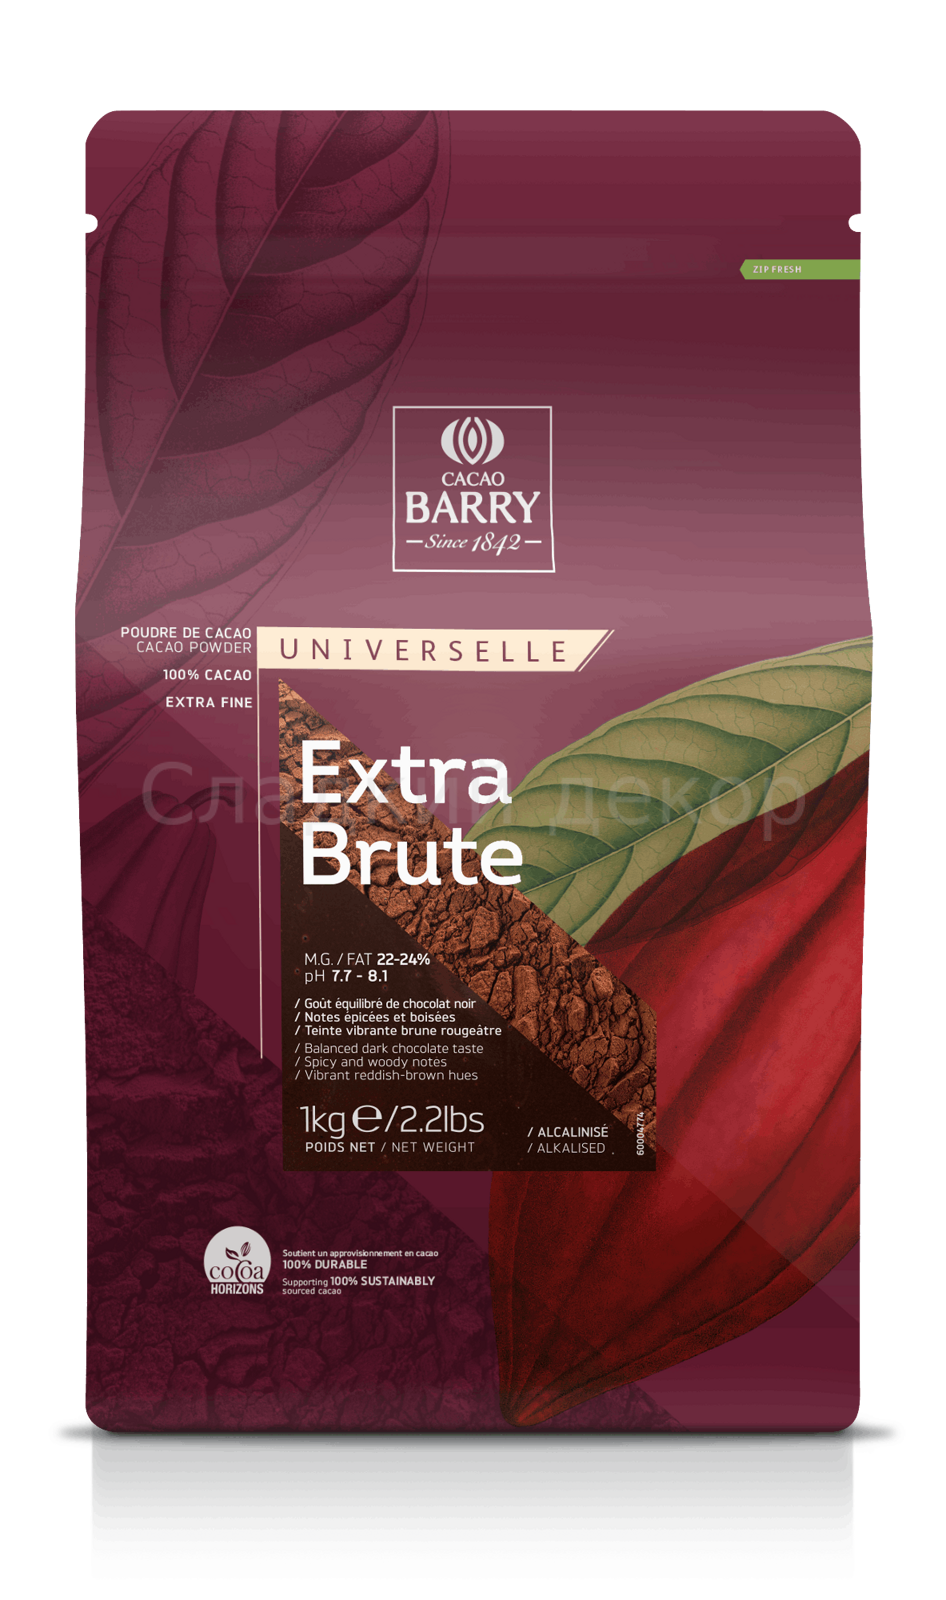 Какао-порошок Cacao Barry Extra Brute 22/24%, 1 кг.